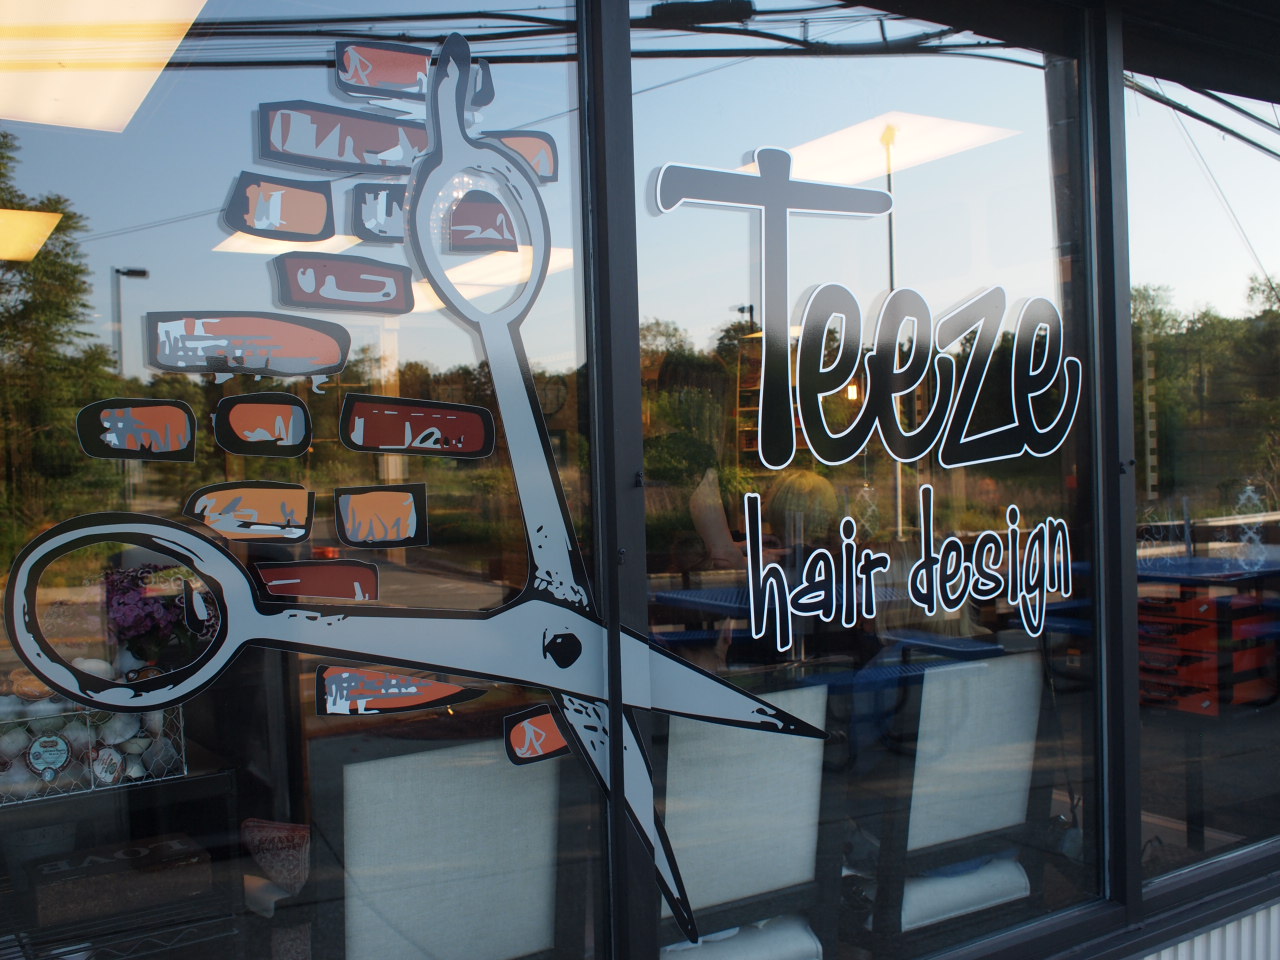 Oakland Teeze Hair Design outside